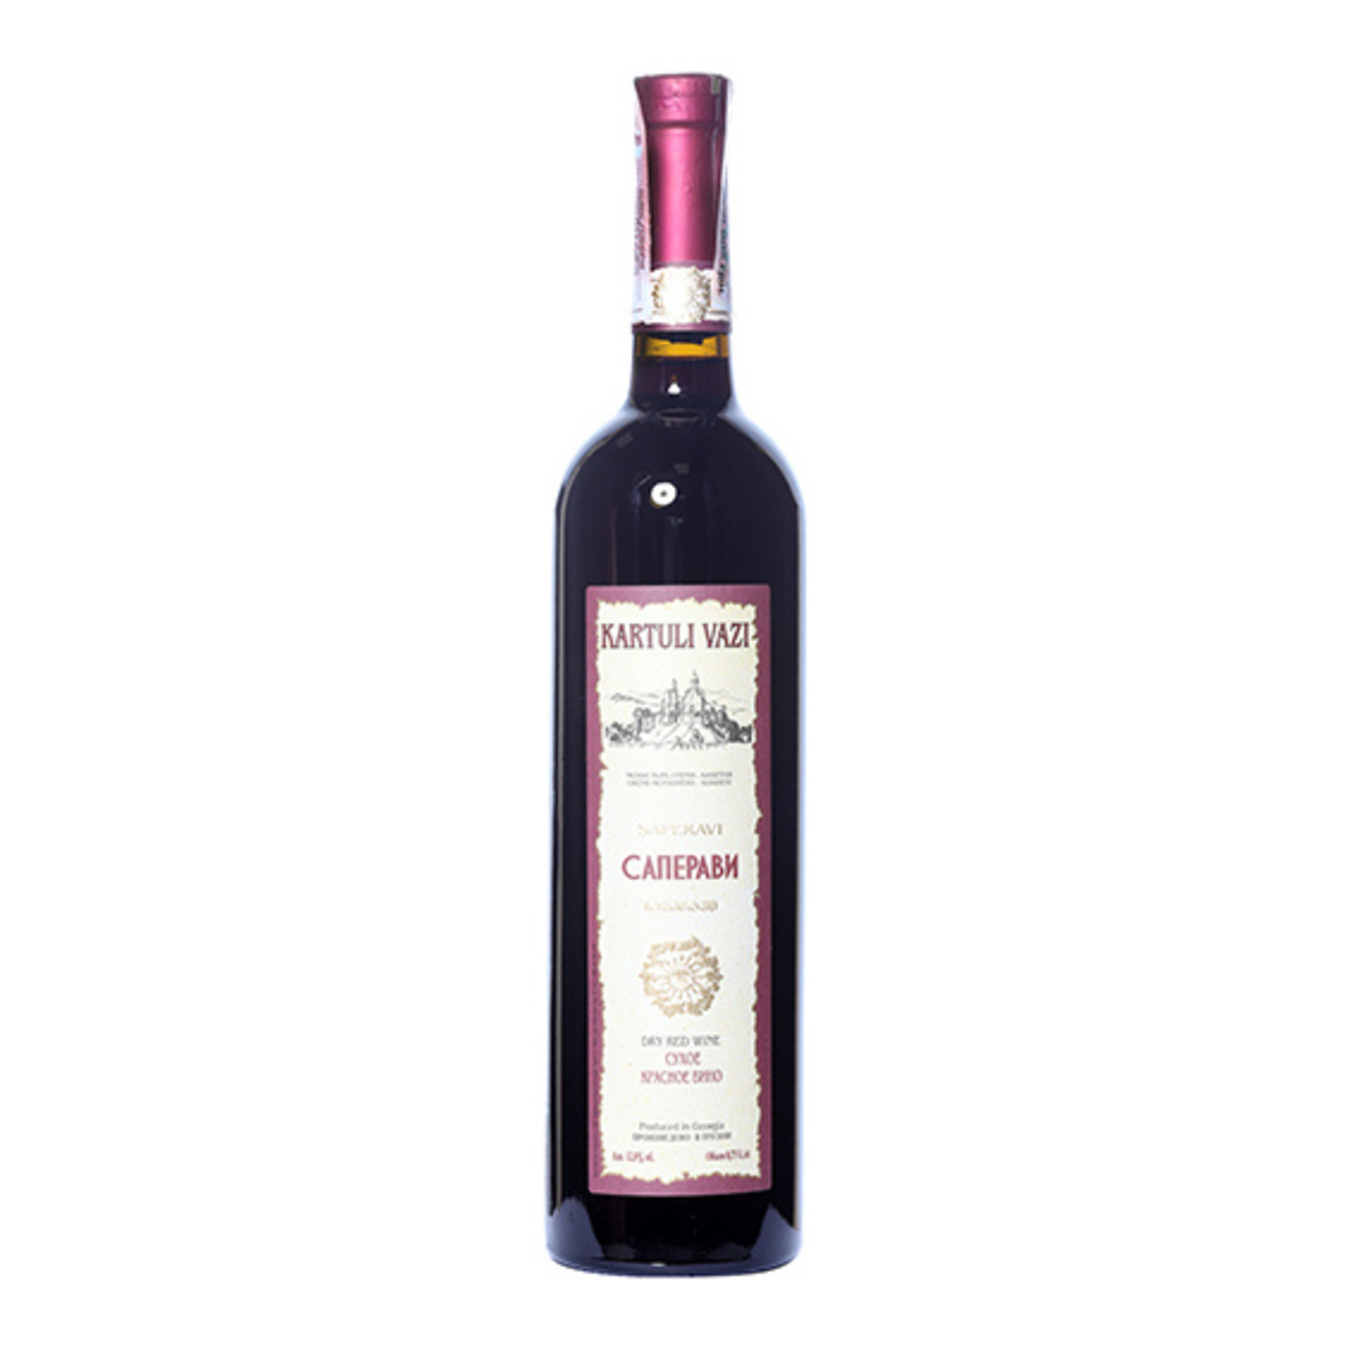 Kartuli Vazi Saperavi Wine red dry 11.5% 0,75l